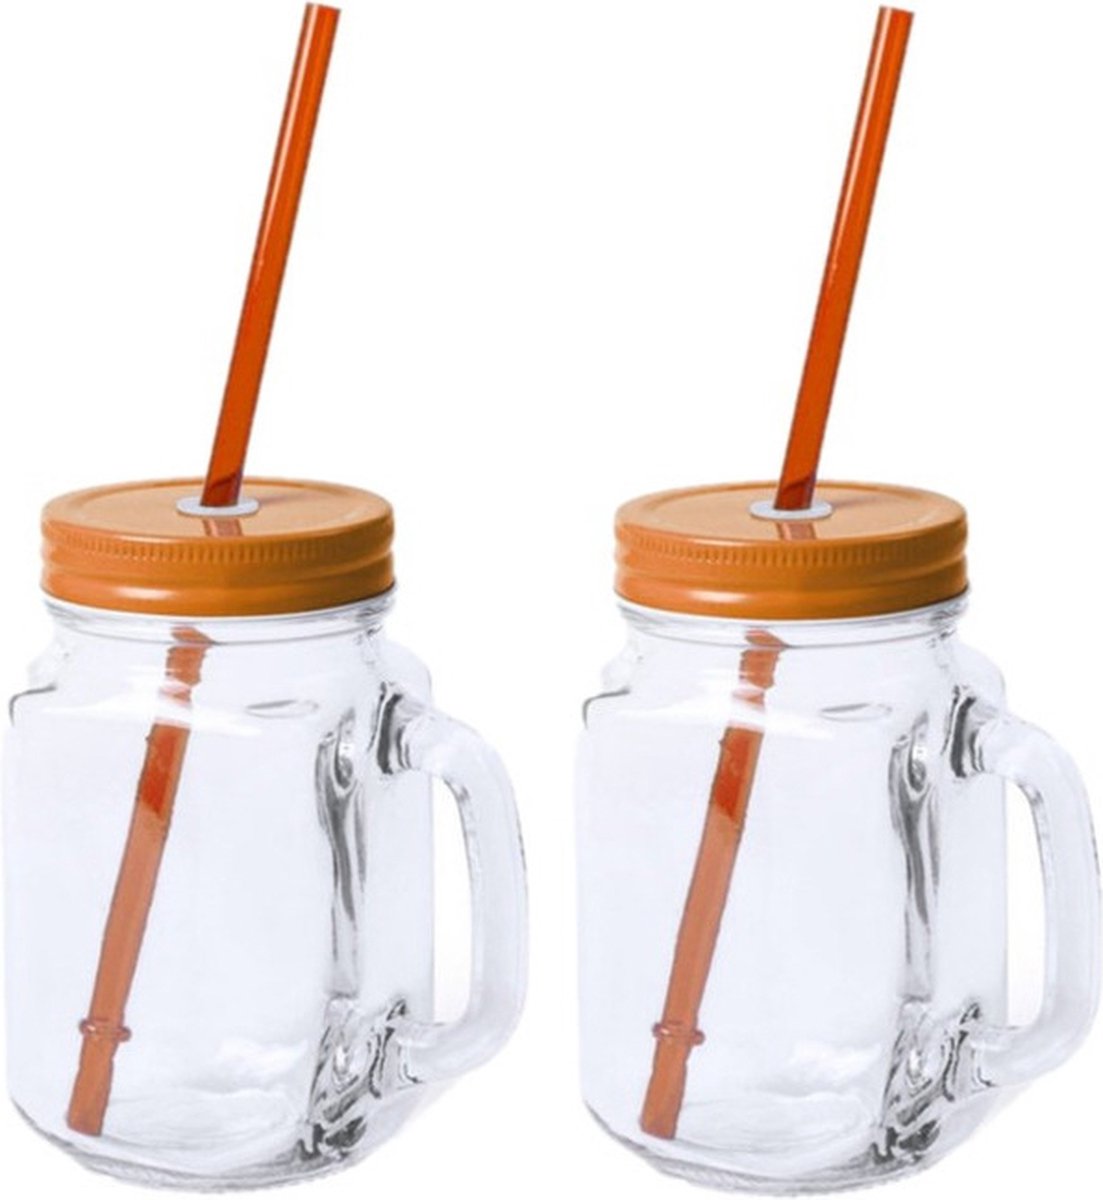 10x stuks Glazen Mason Jar drinkbekers oranje dop en rietje 500 ml - afsluitbaar - Koningsdag feest/supporters/fans artikelen